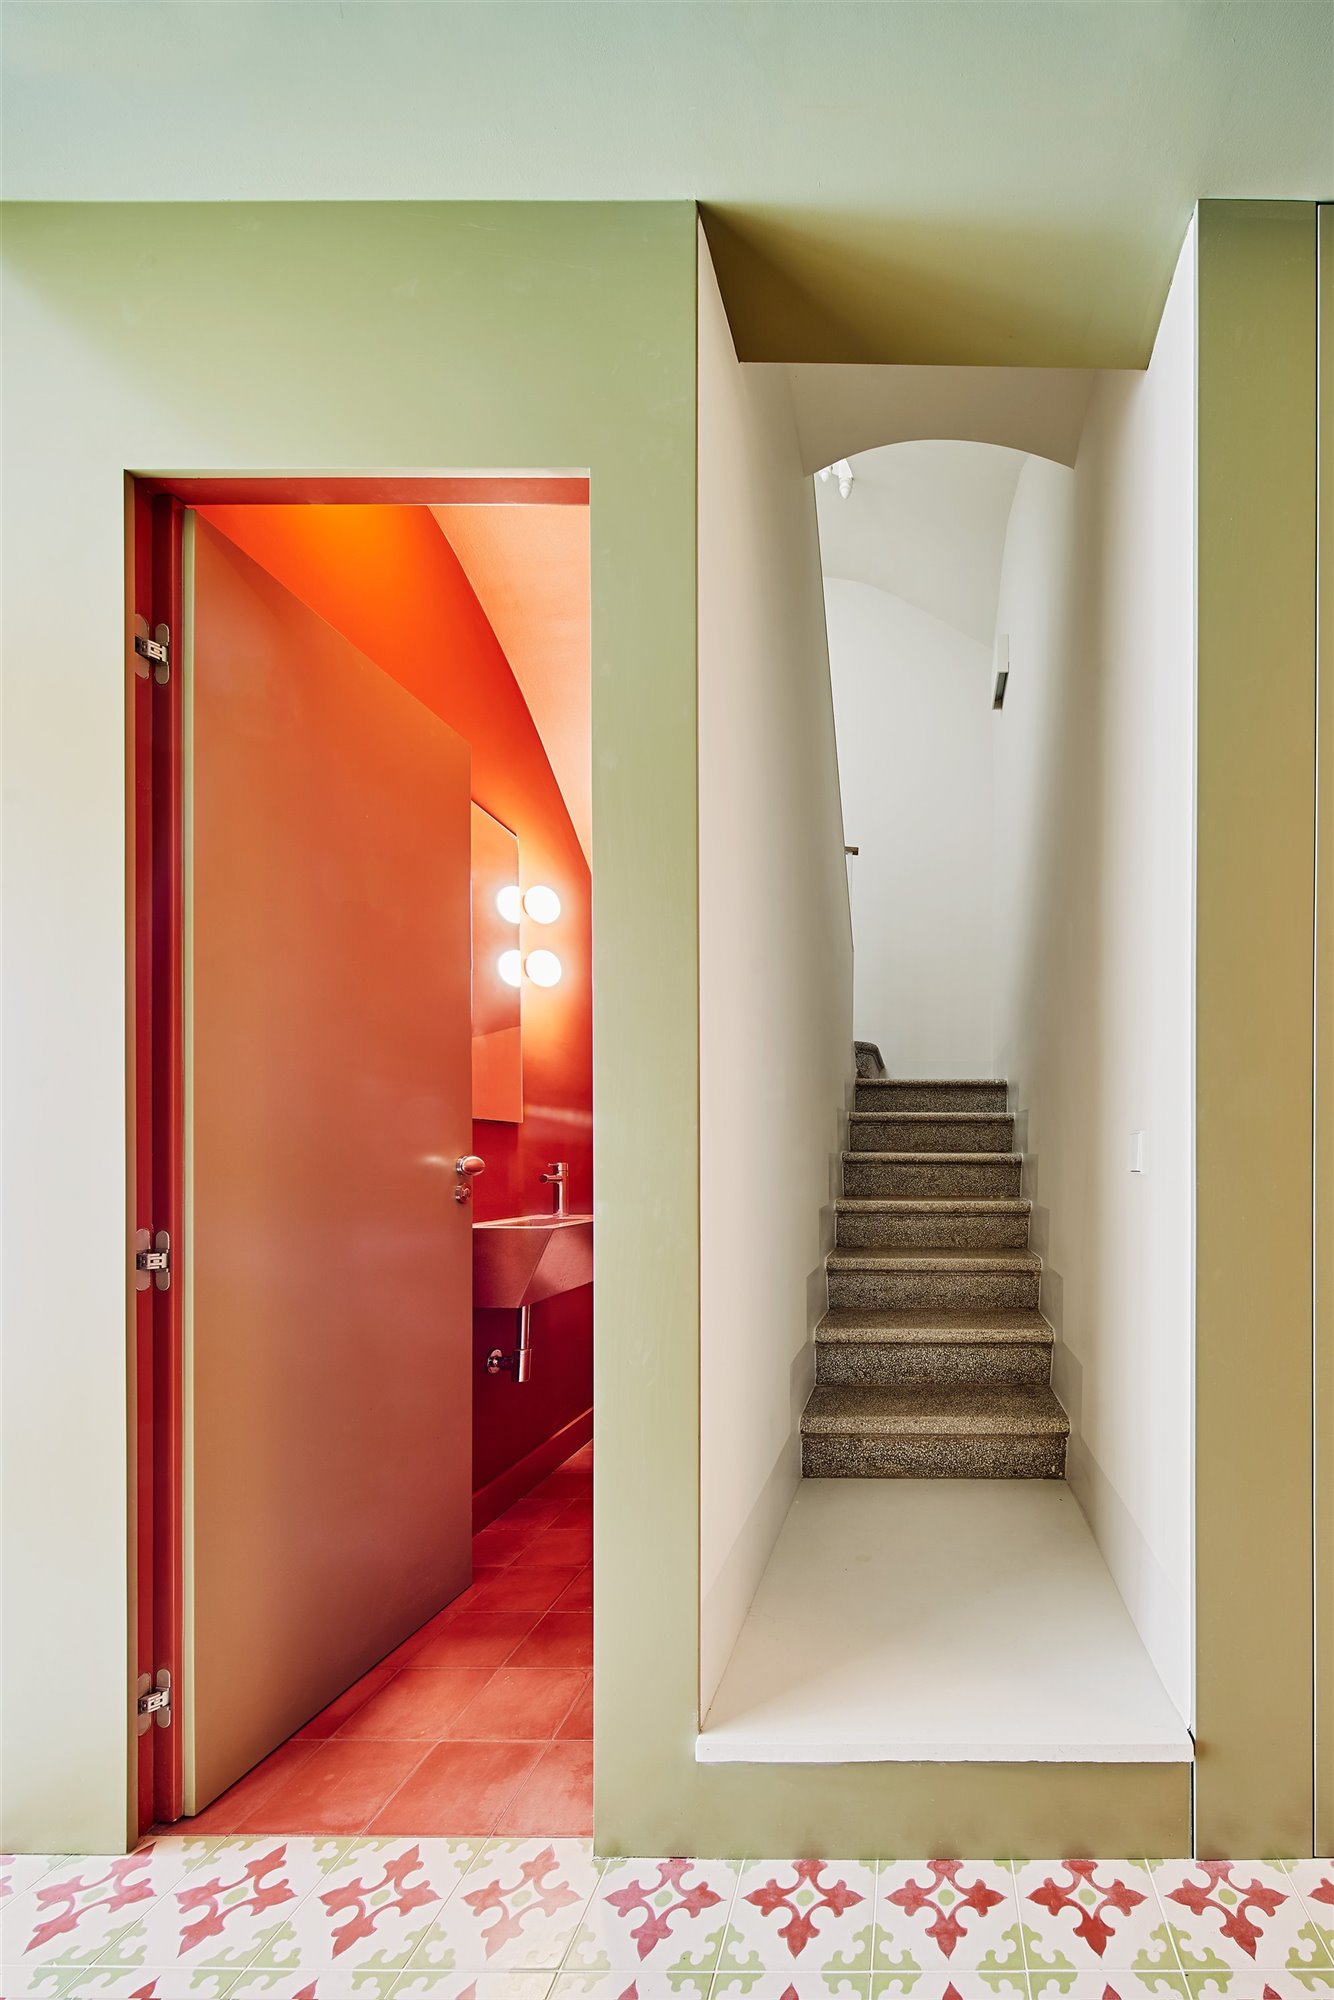 Escalera y baño septiembre arquitectura